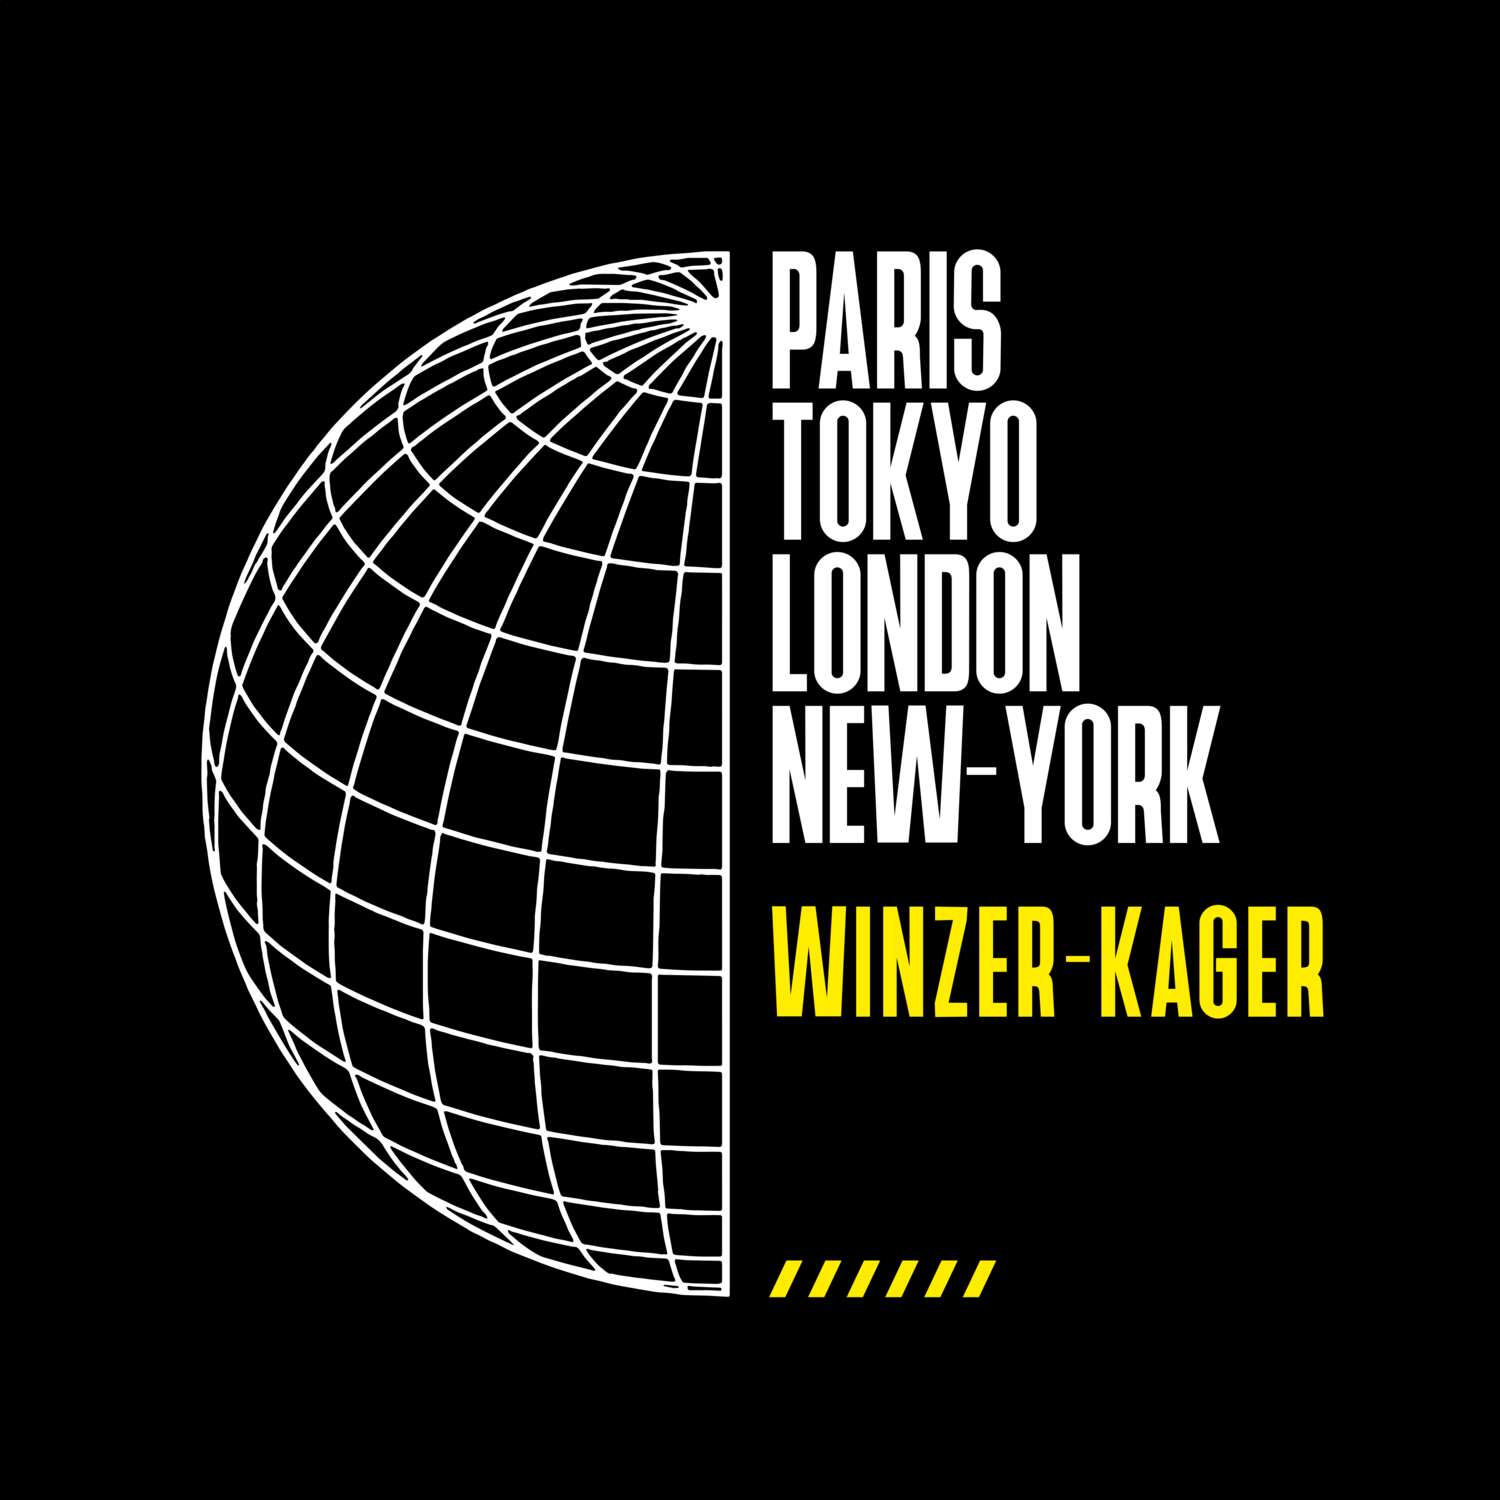 Winzer-Kager T-Shirt »Paris Tokyo London«